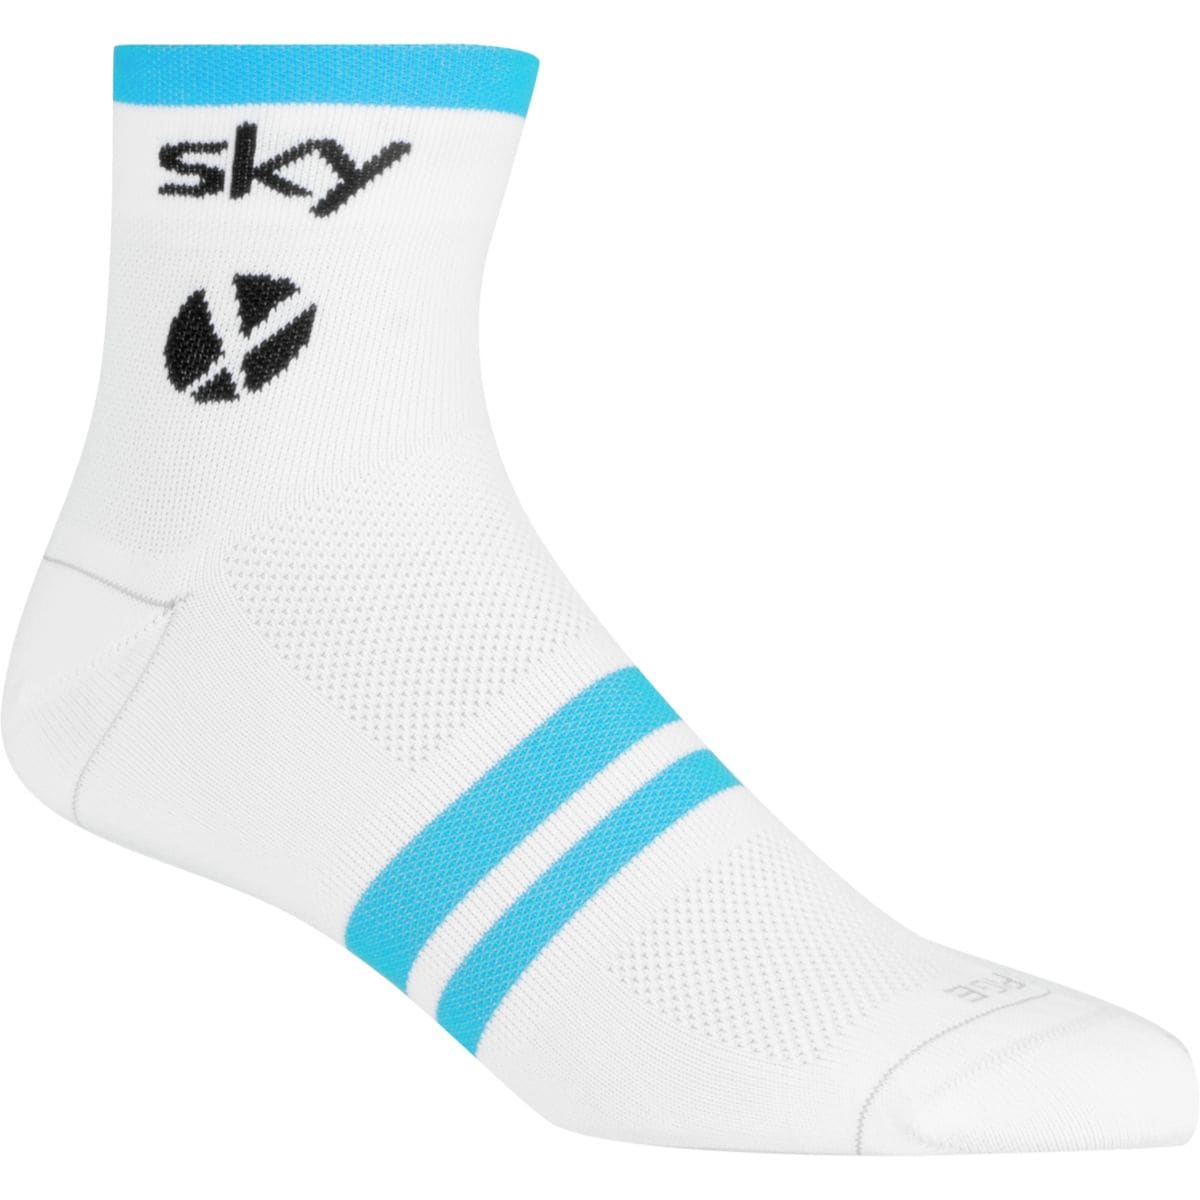 Rapha Team Sky Pro Short Socks Men's